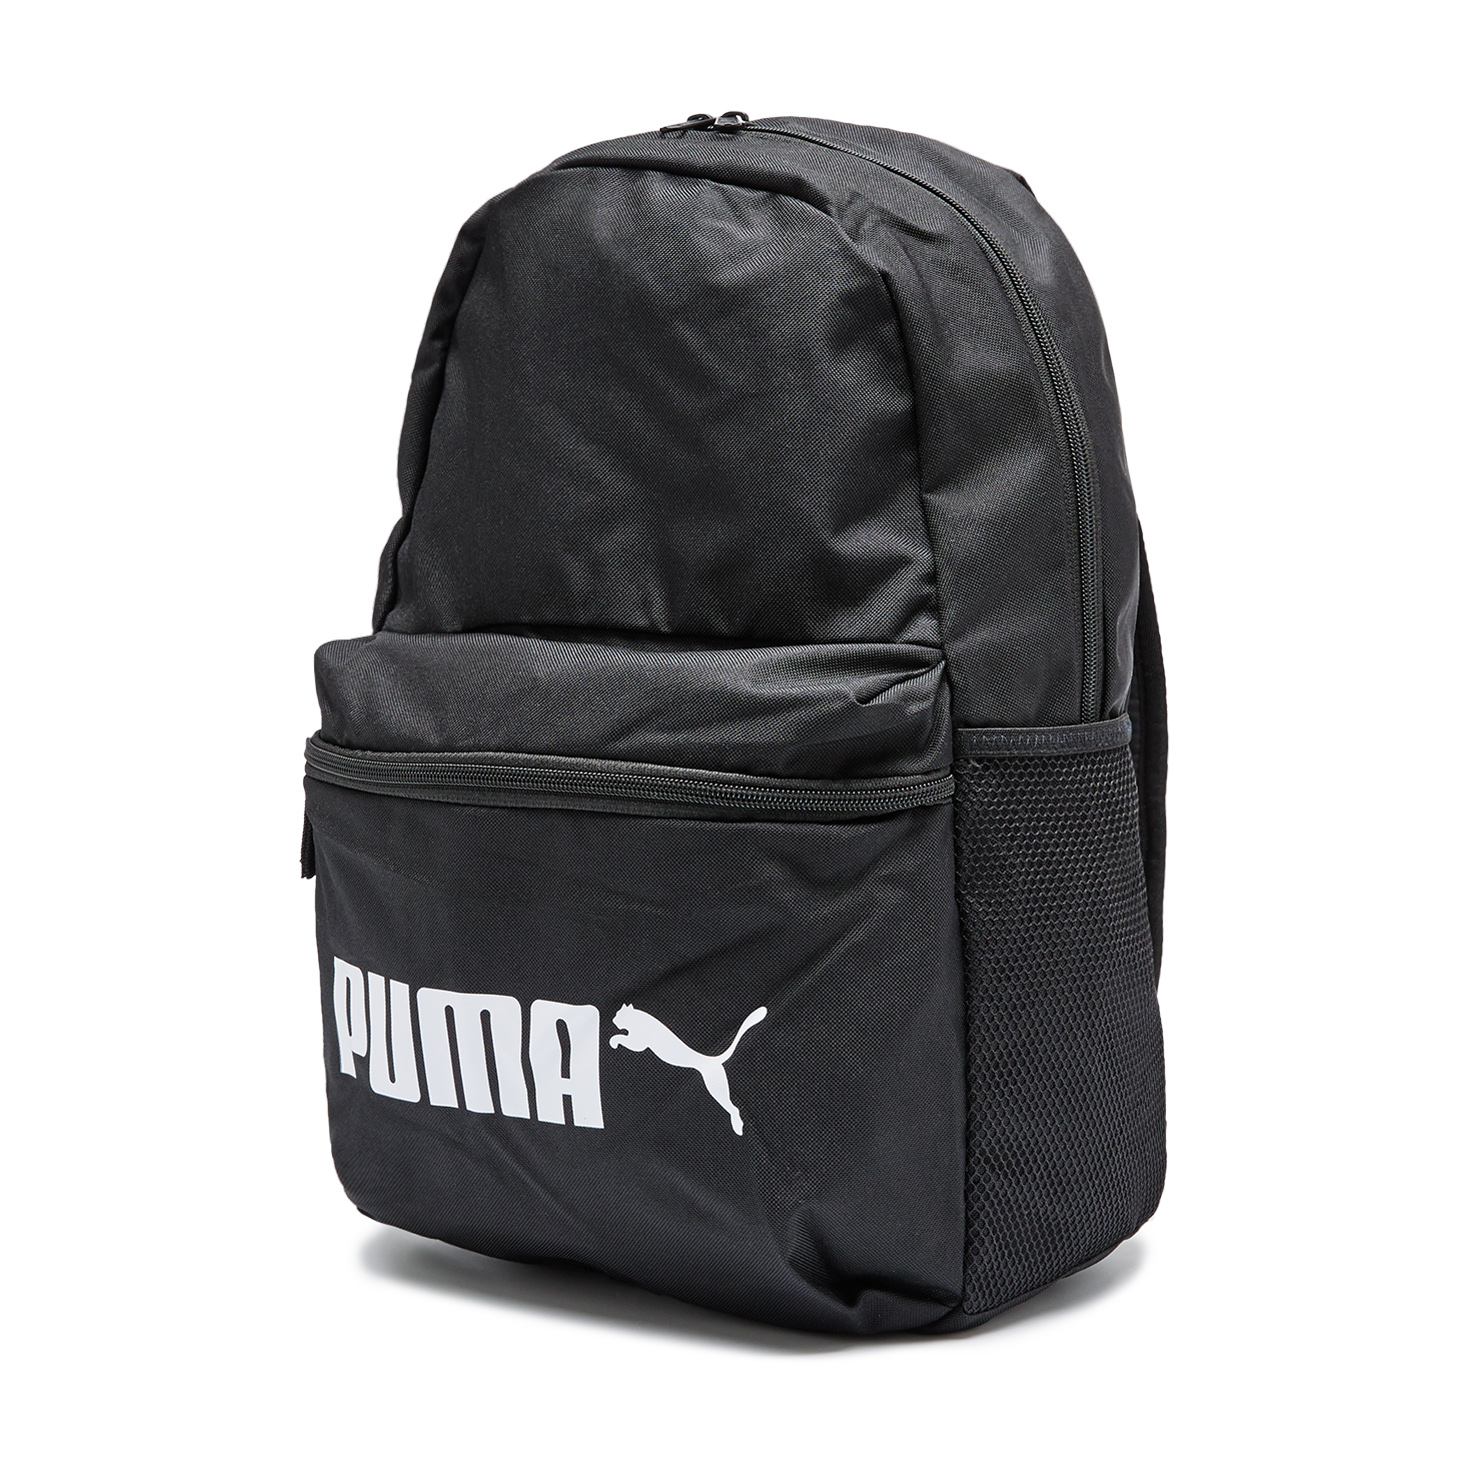 Phase Backpack No. 2 PUMA, размер Один размер, цвет черный PM077482 - фото 3